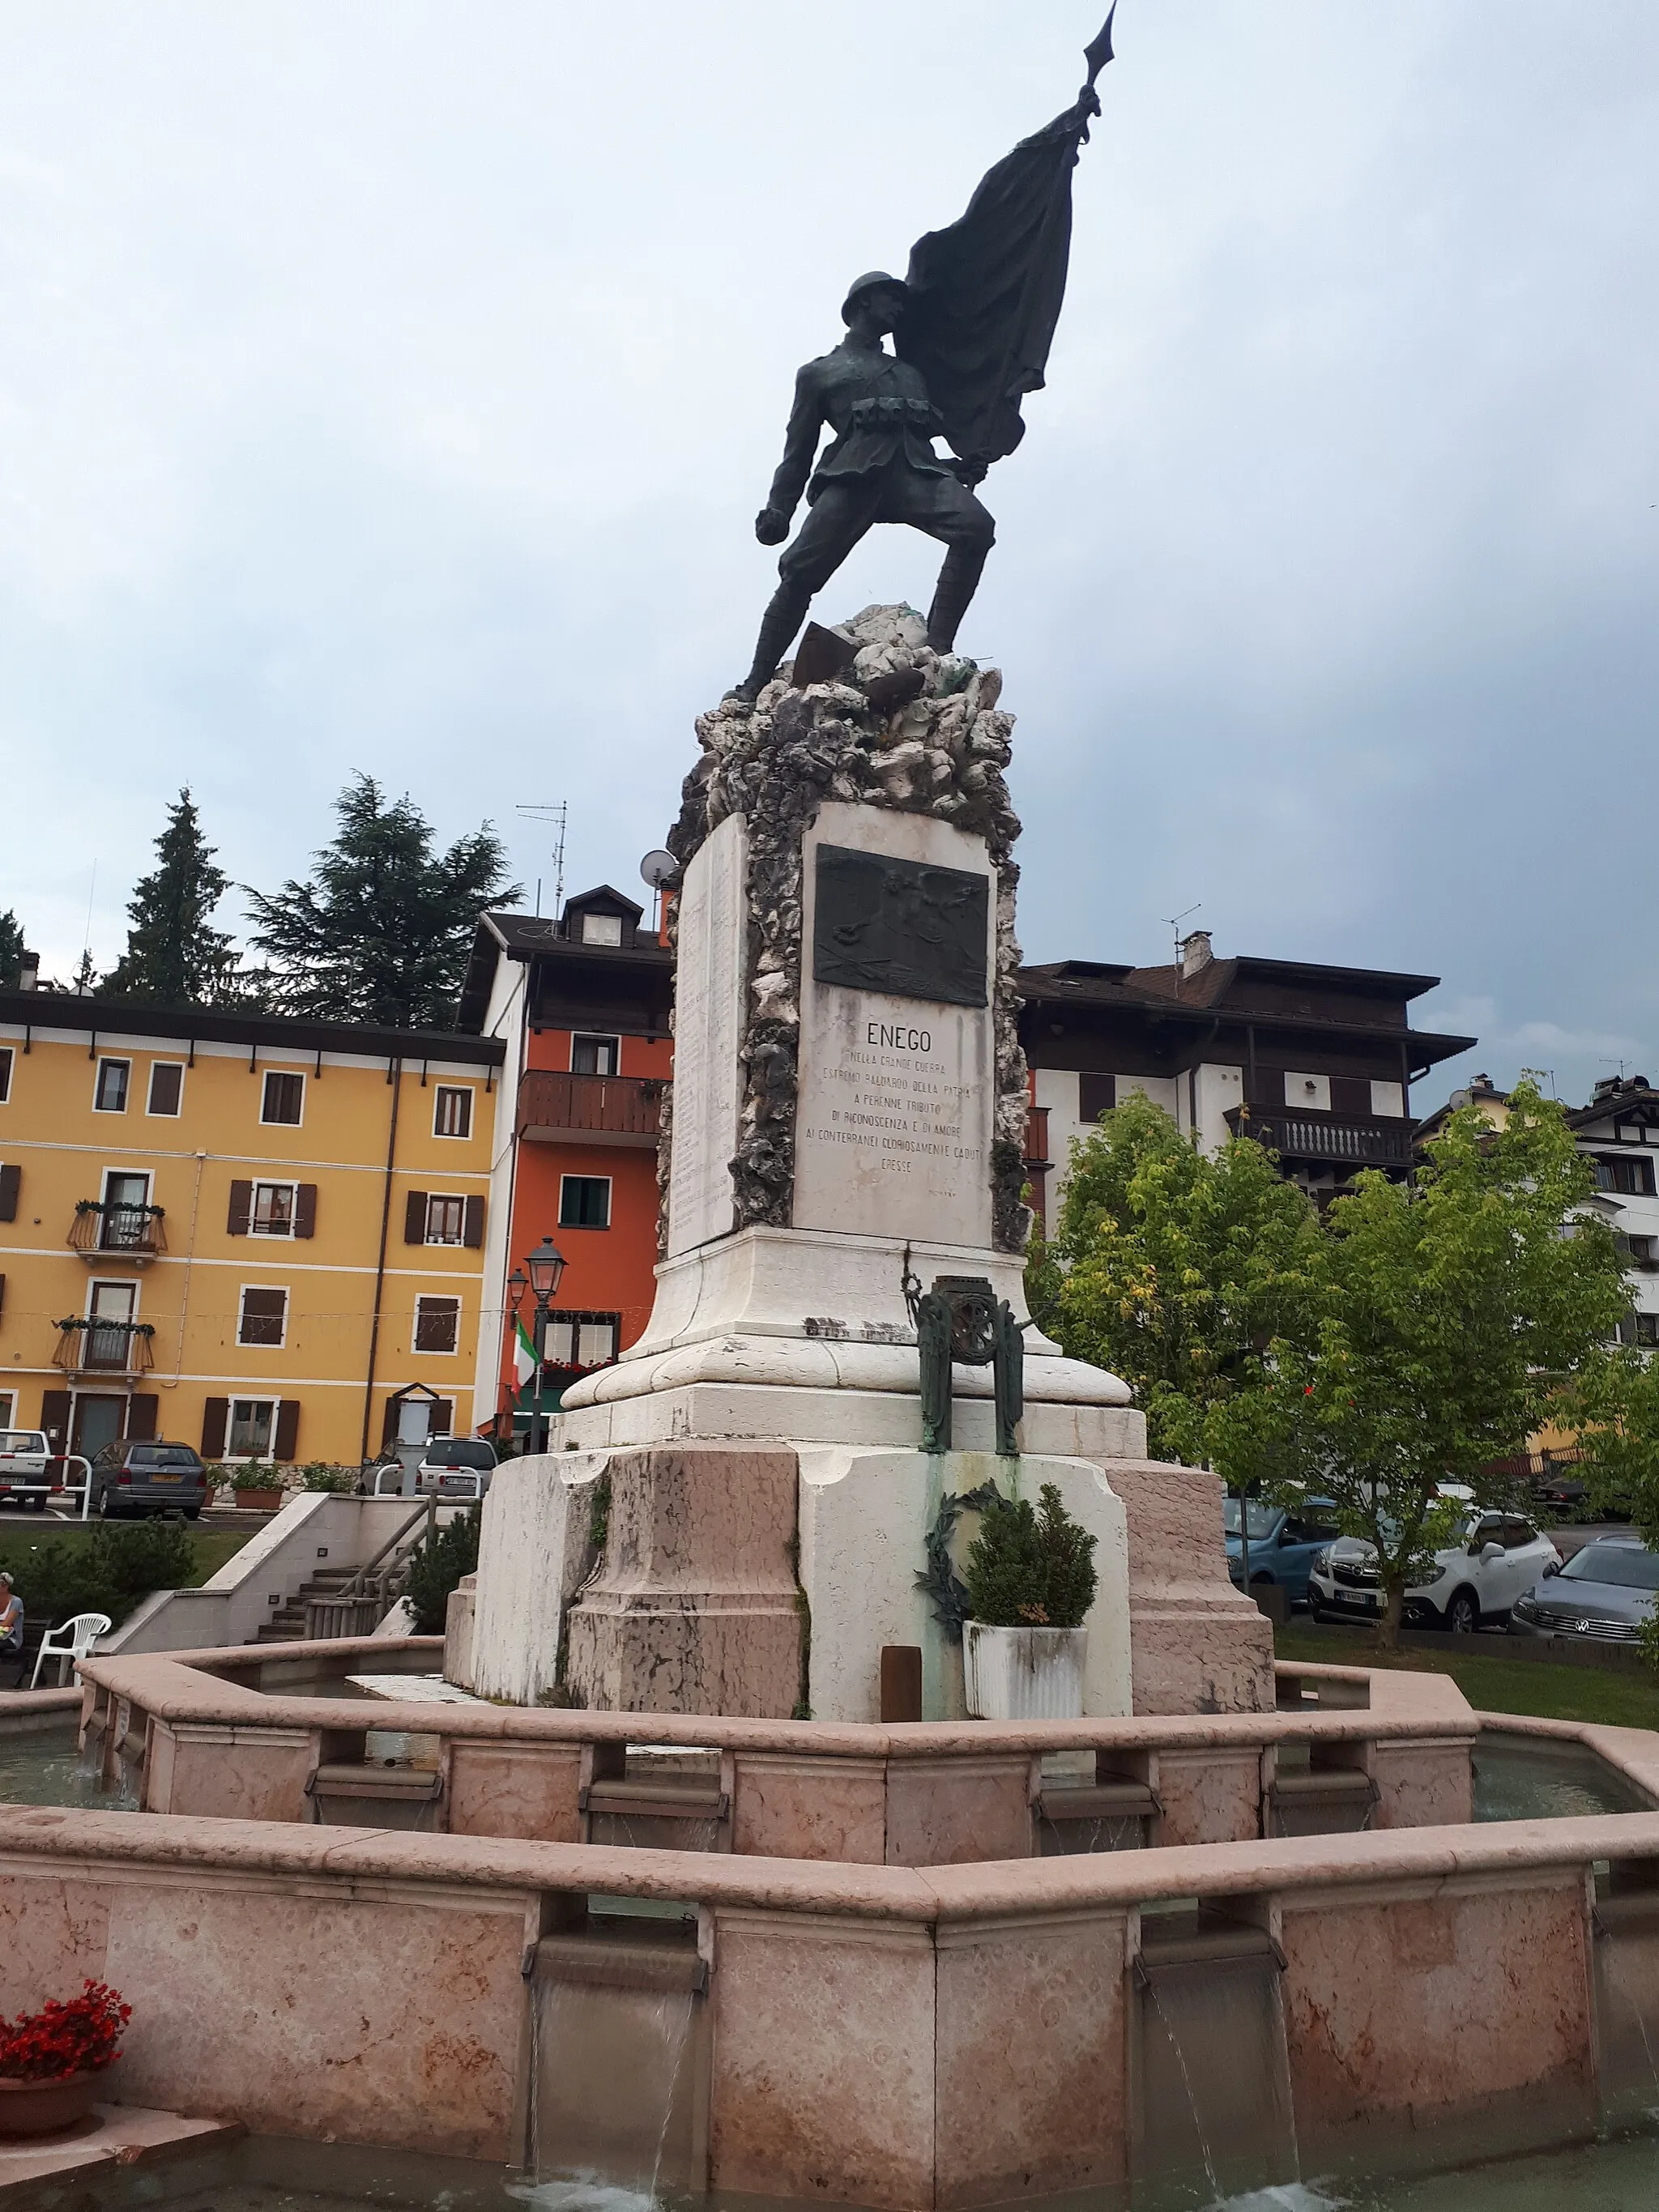 Photo showing: Monumento ai Caduti di Guerra Enego